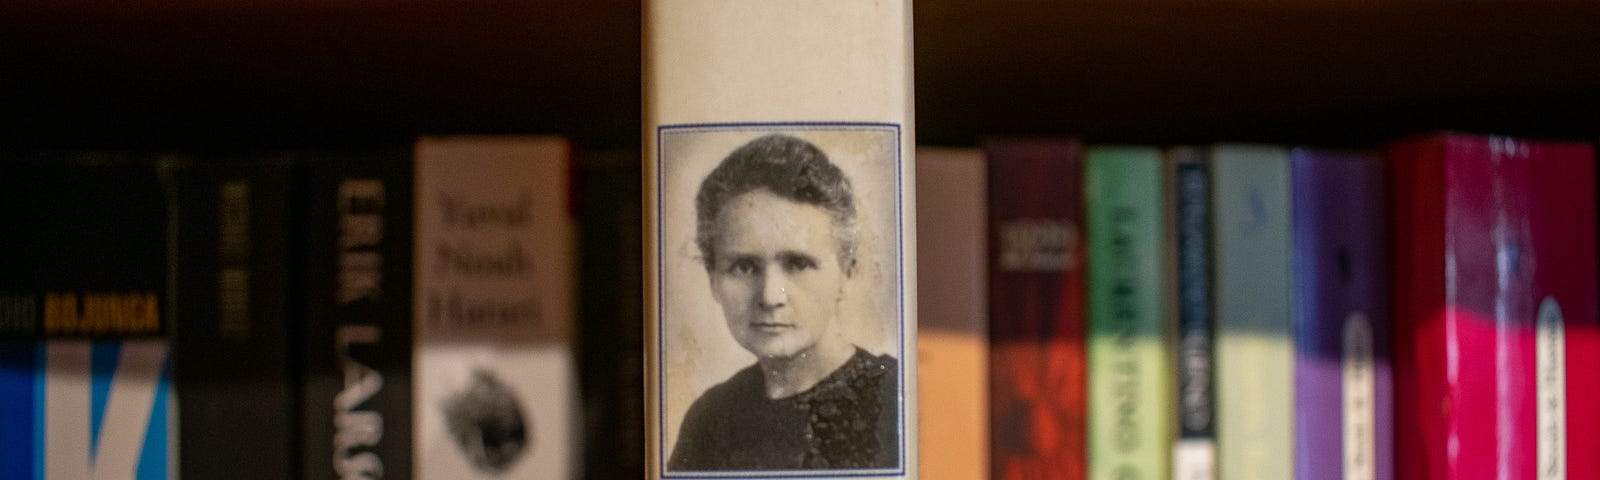 Uma estante com livros, com destaque para o livro “Marie Curie: uma vida”.